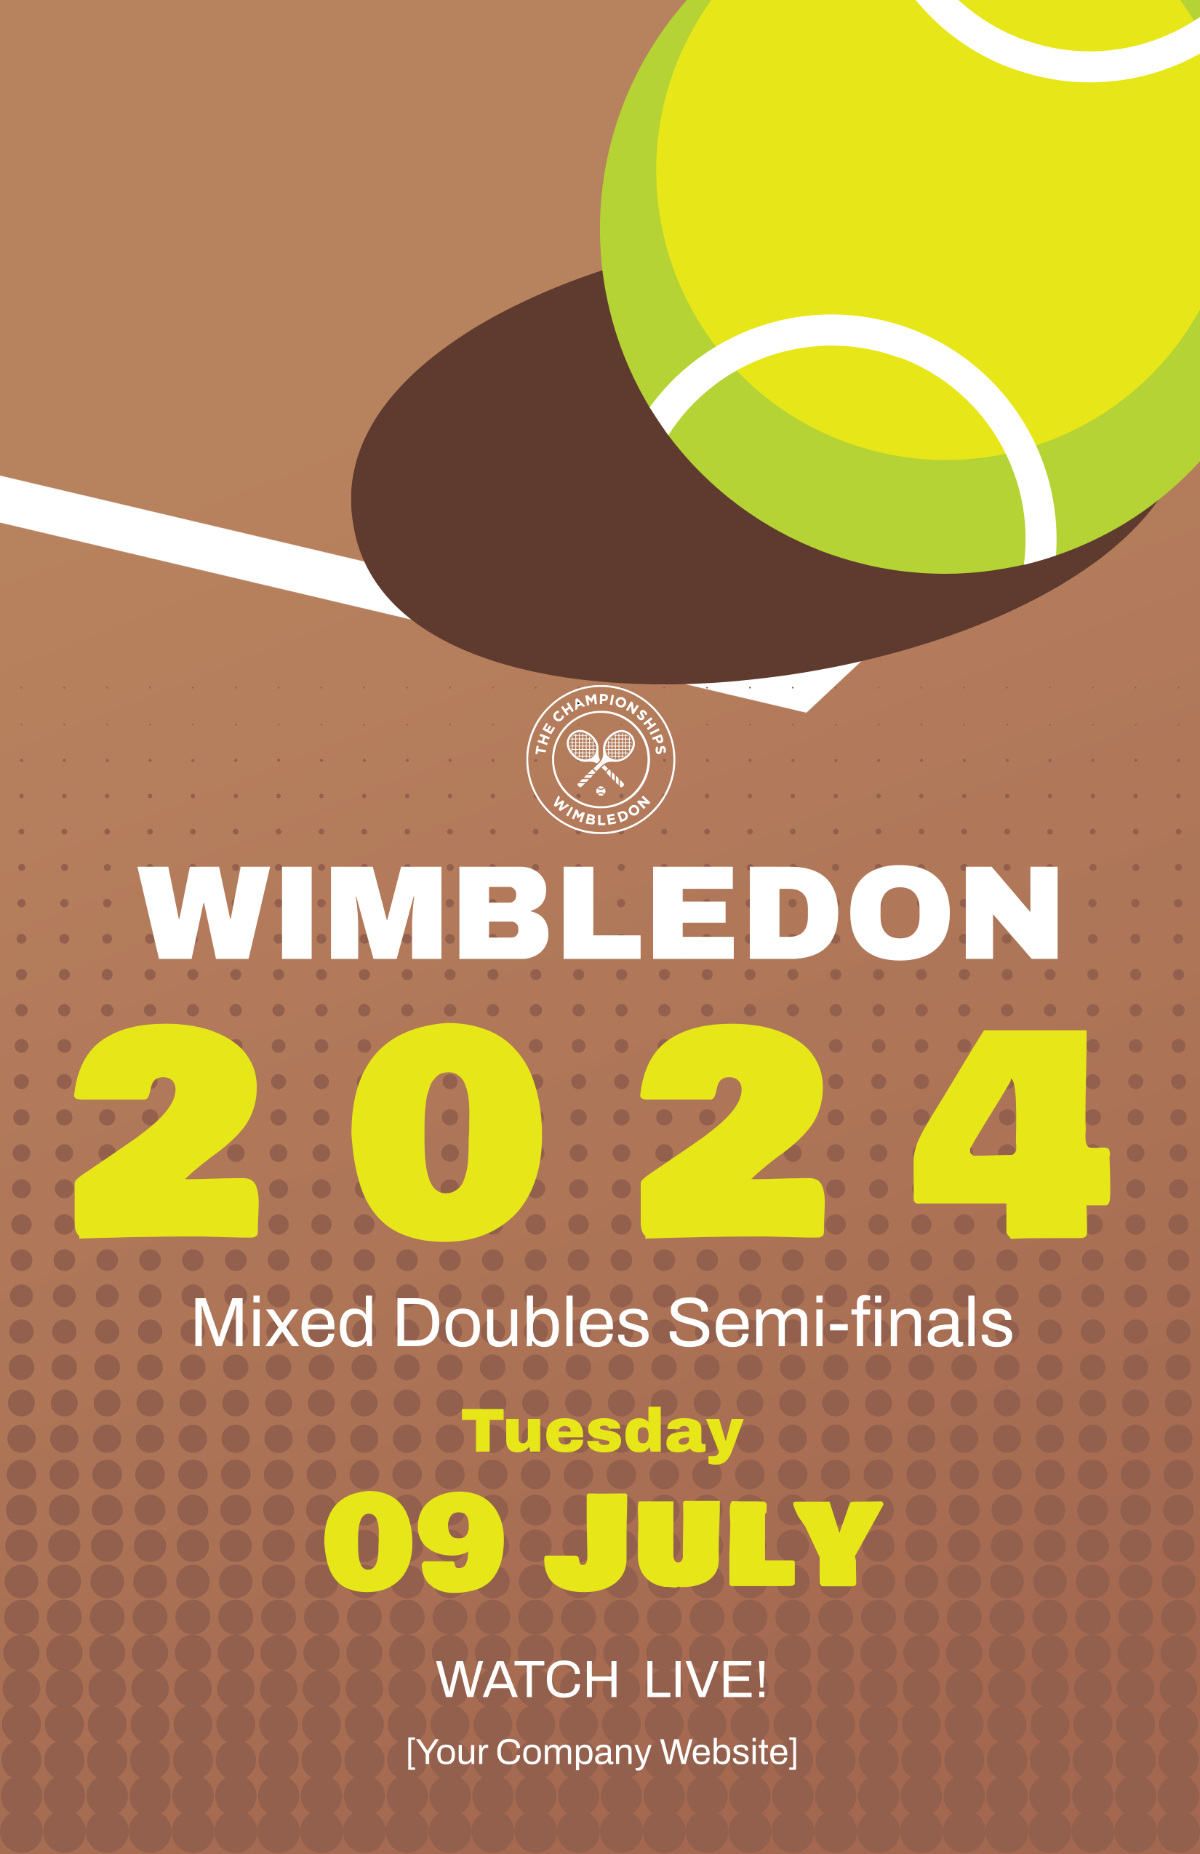 Wimbledon Mixed Doubles Semi-finals